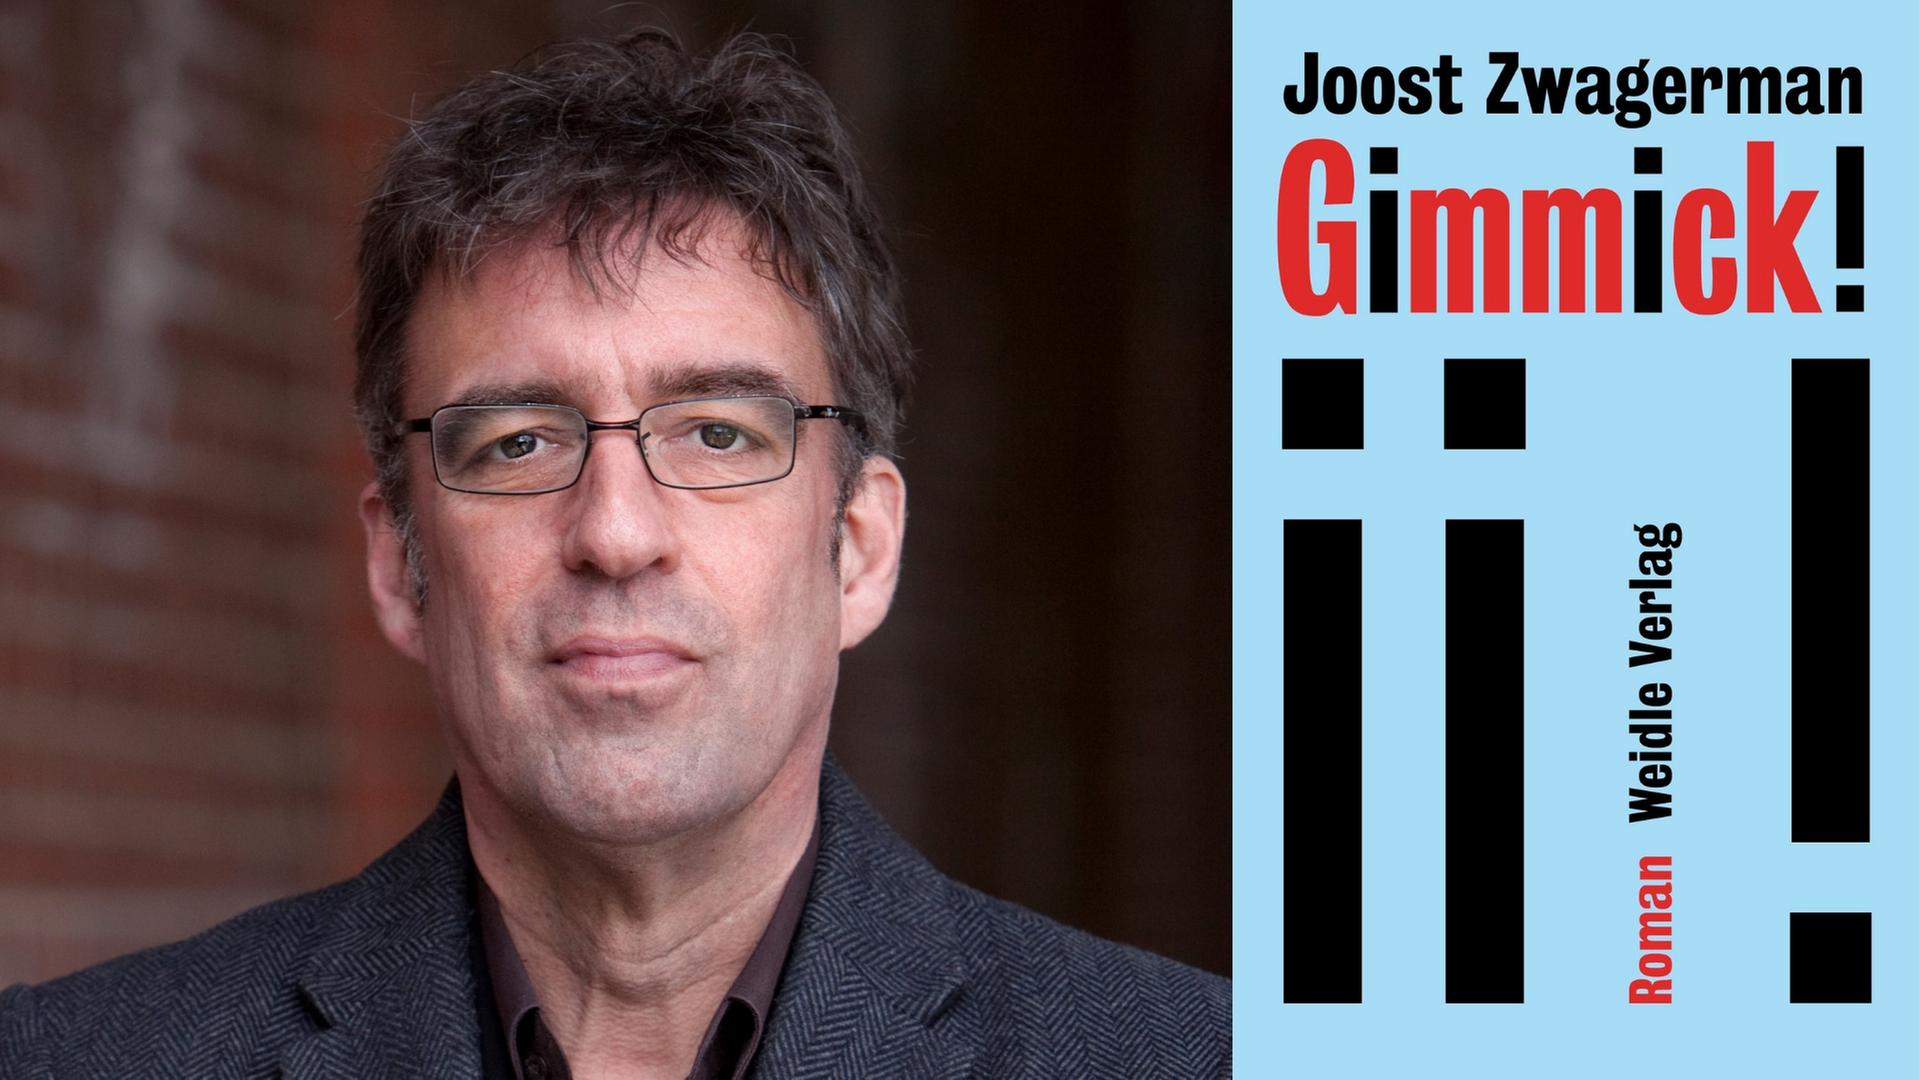 Zu sehen ist der Autor Joost Zwagerman und das Cover seines Buches "Gimmick!"